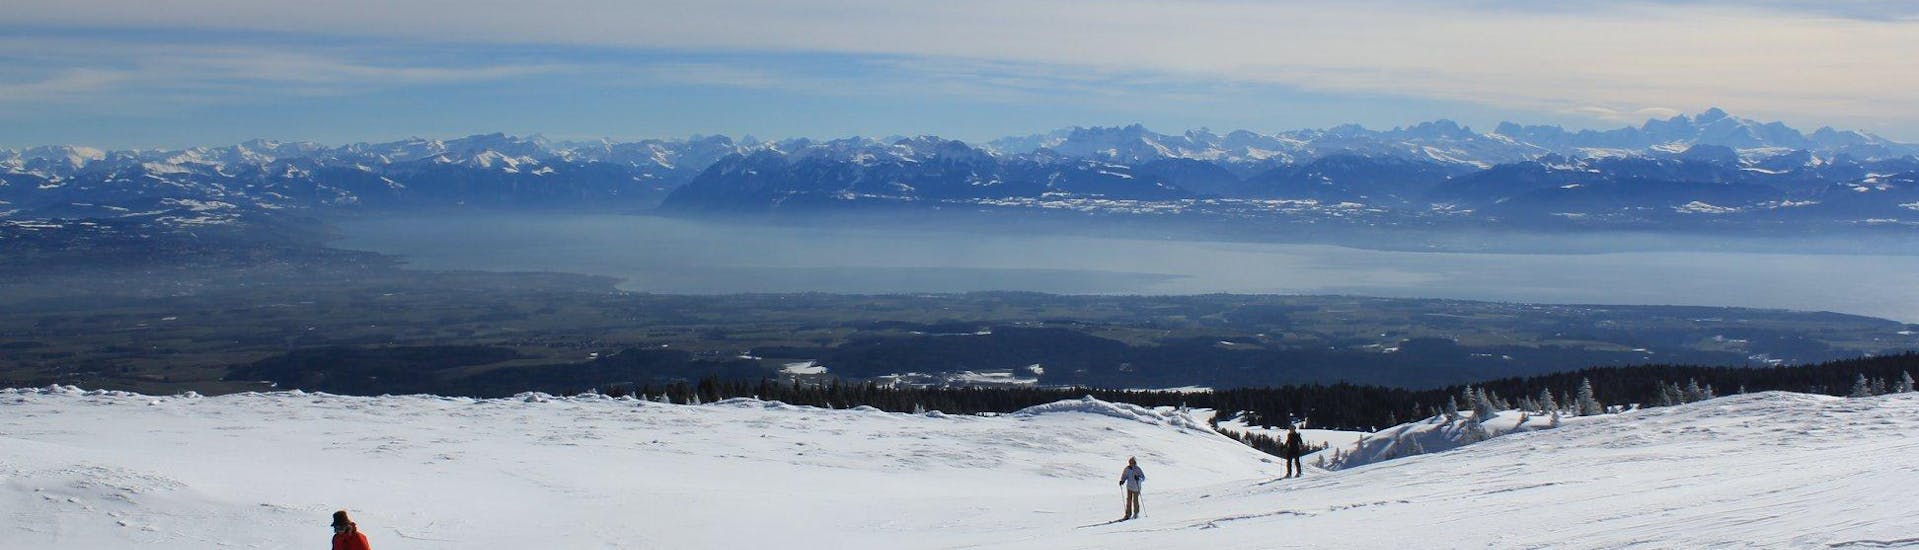 Clases de esquí de fondo a partir de 6 años para todos los niveles.